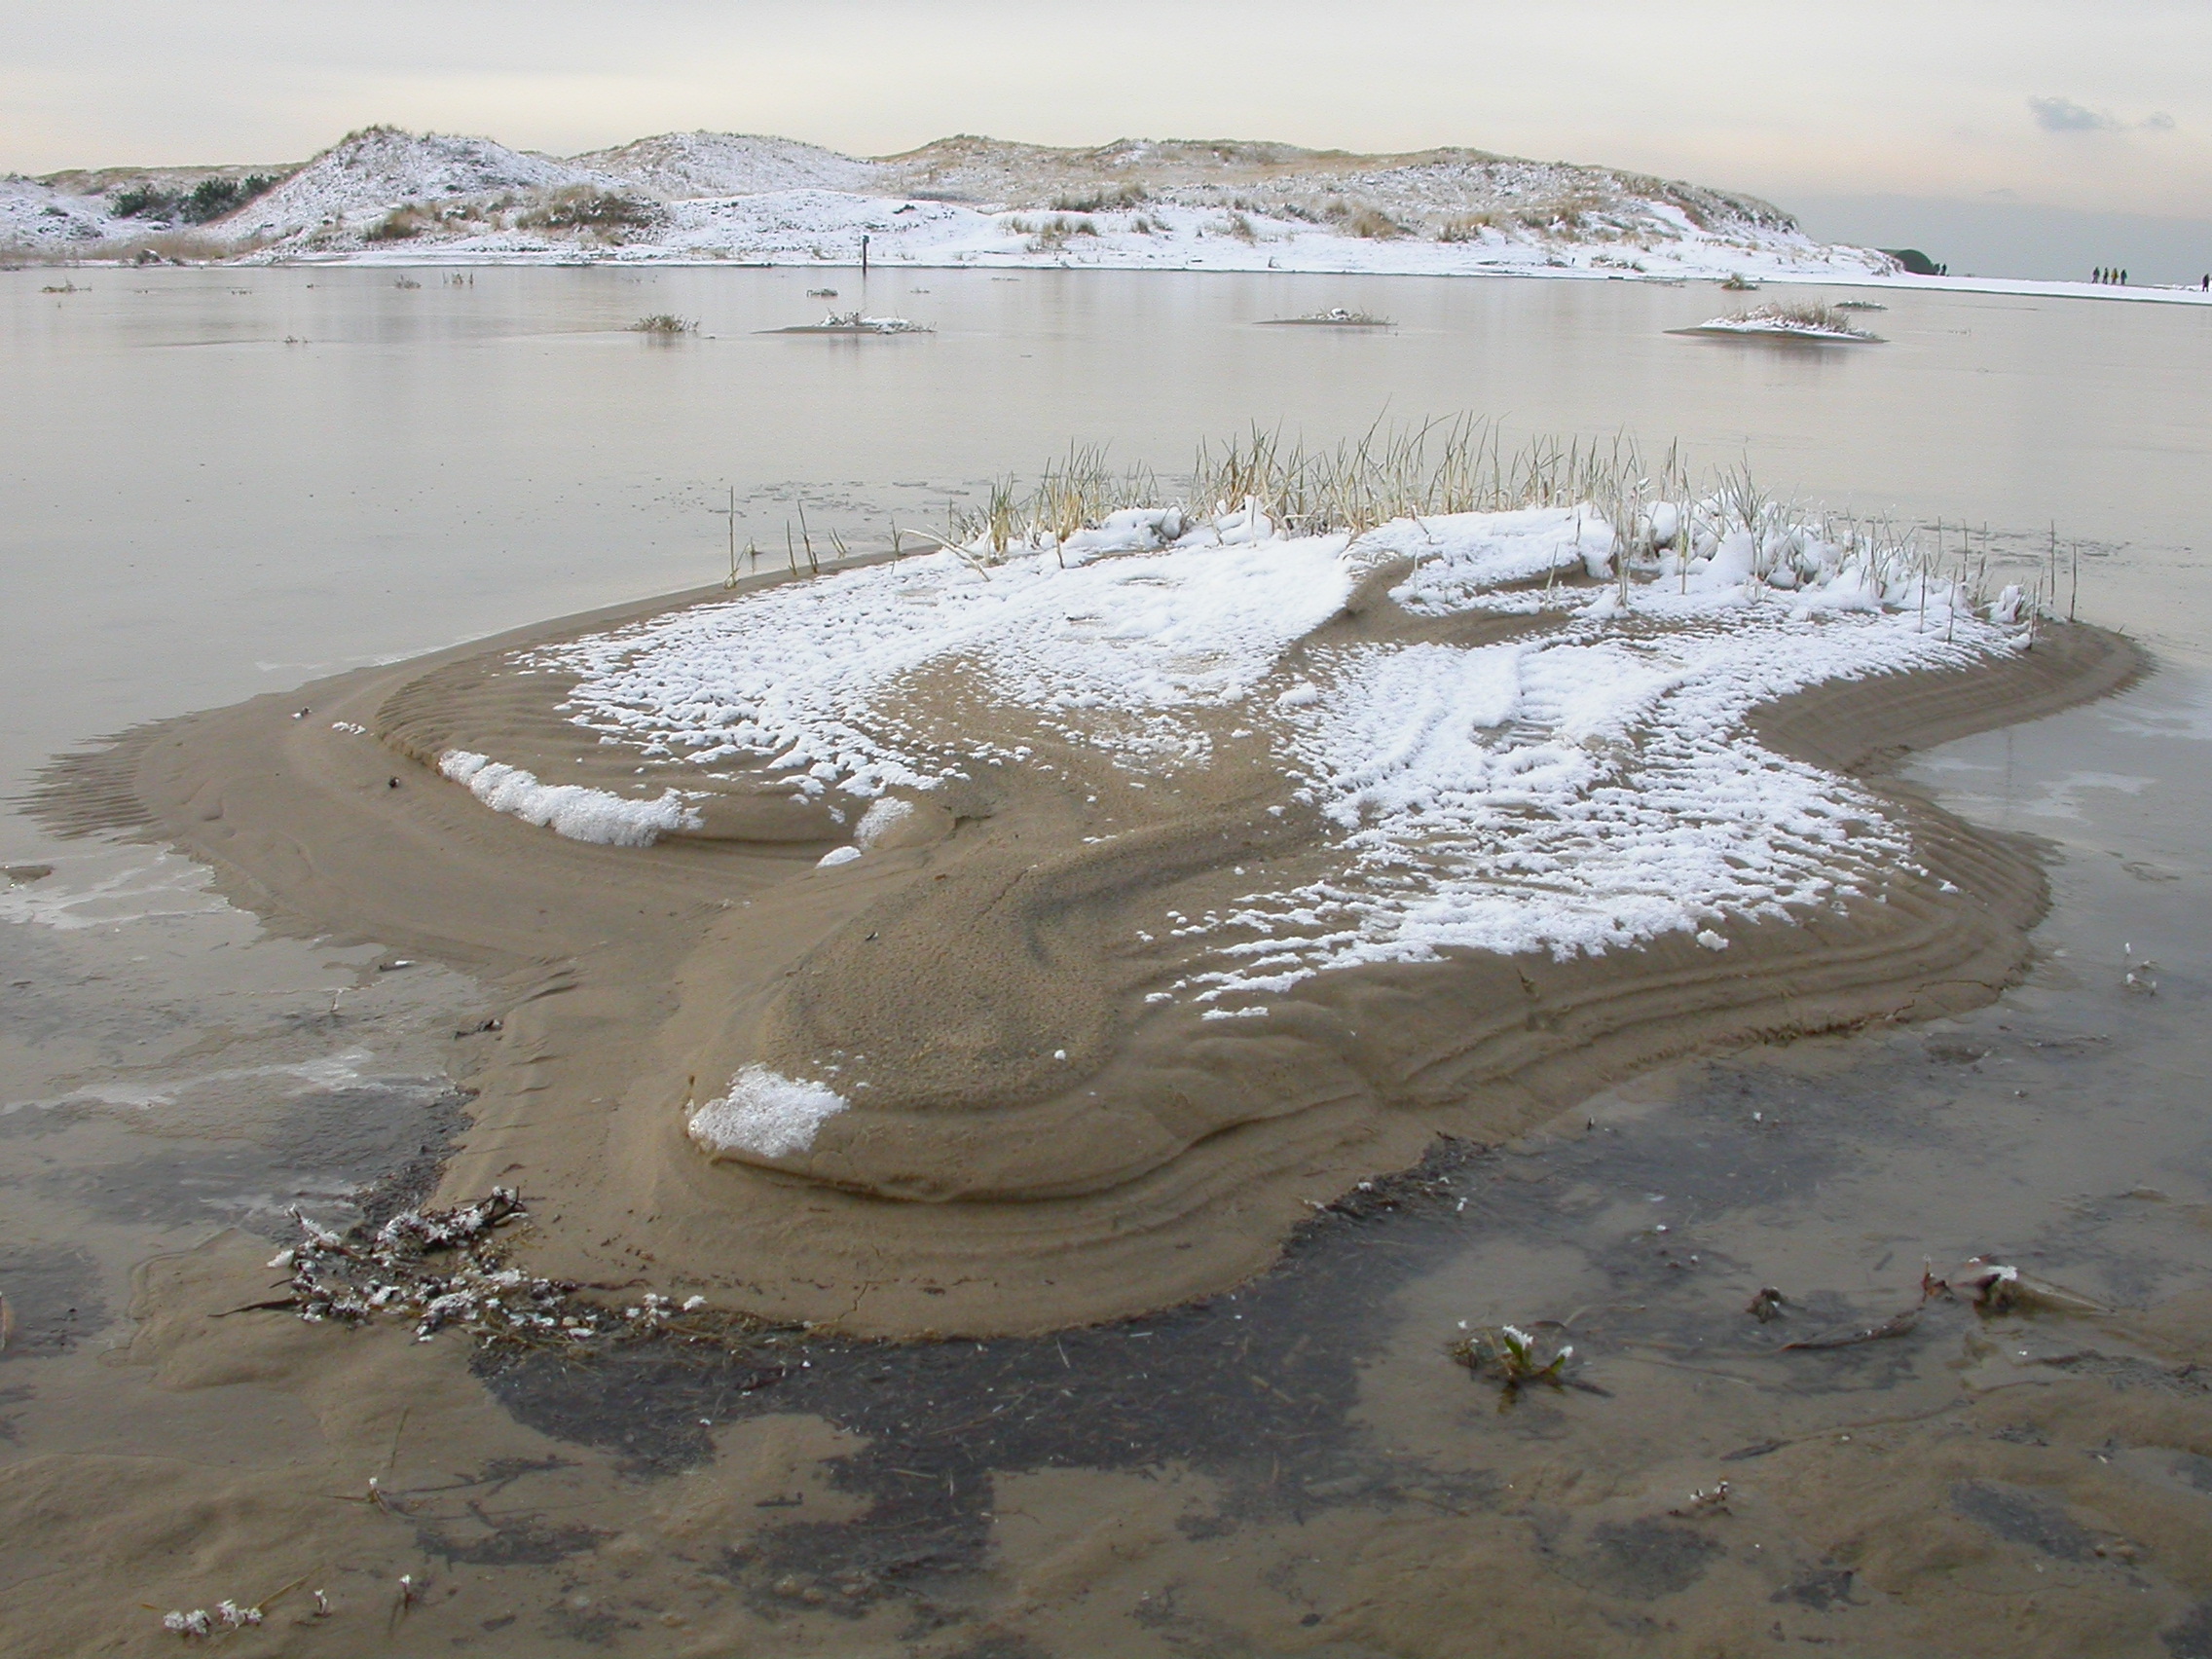 paul lake in dunes in winter schoorl the netherlands frost snow cold